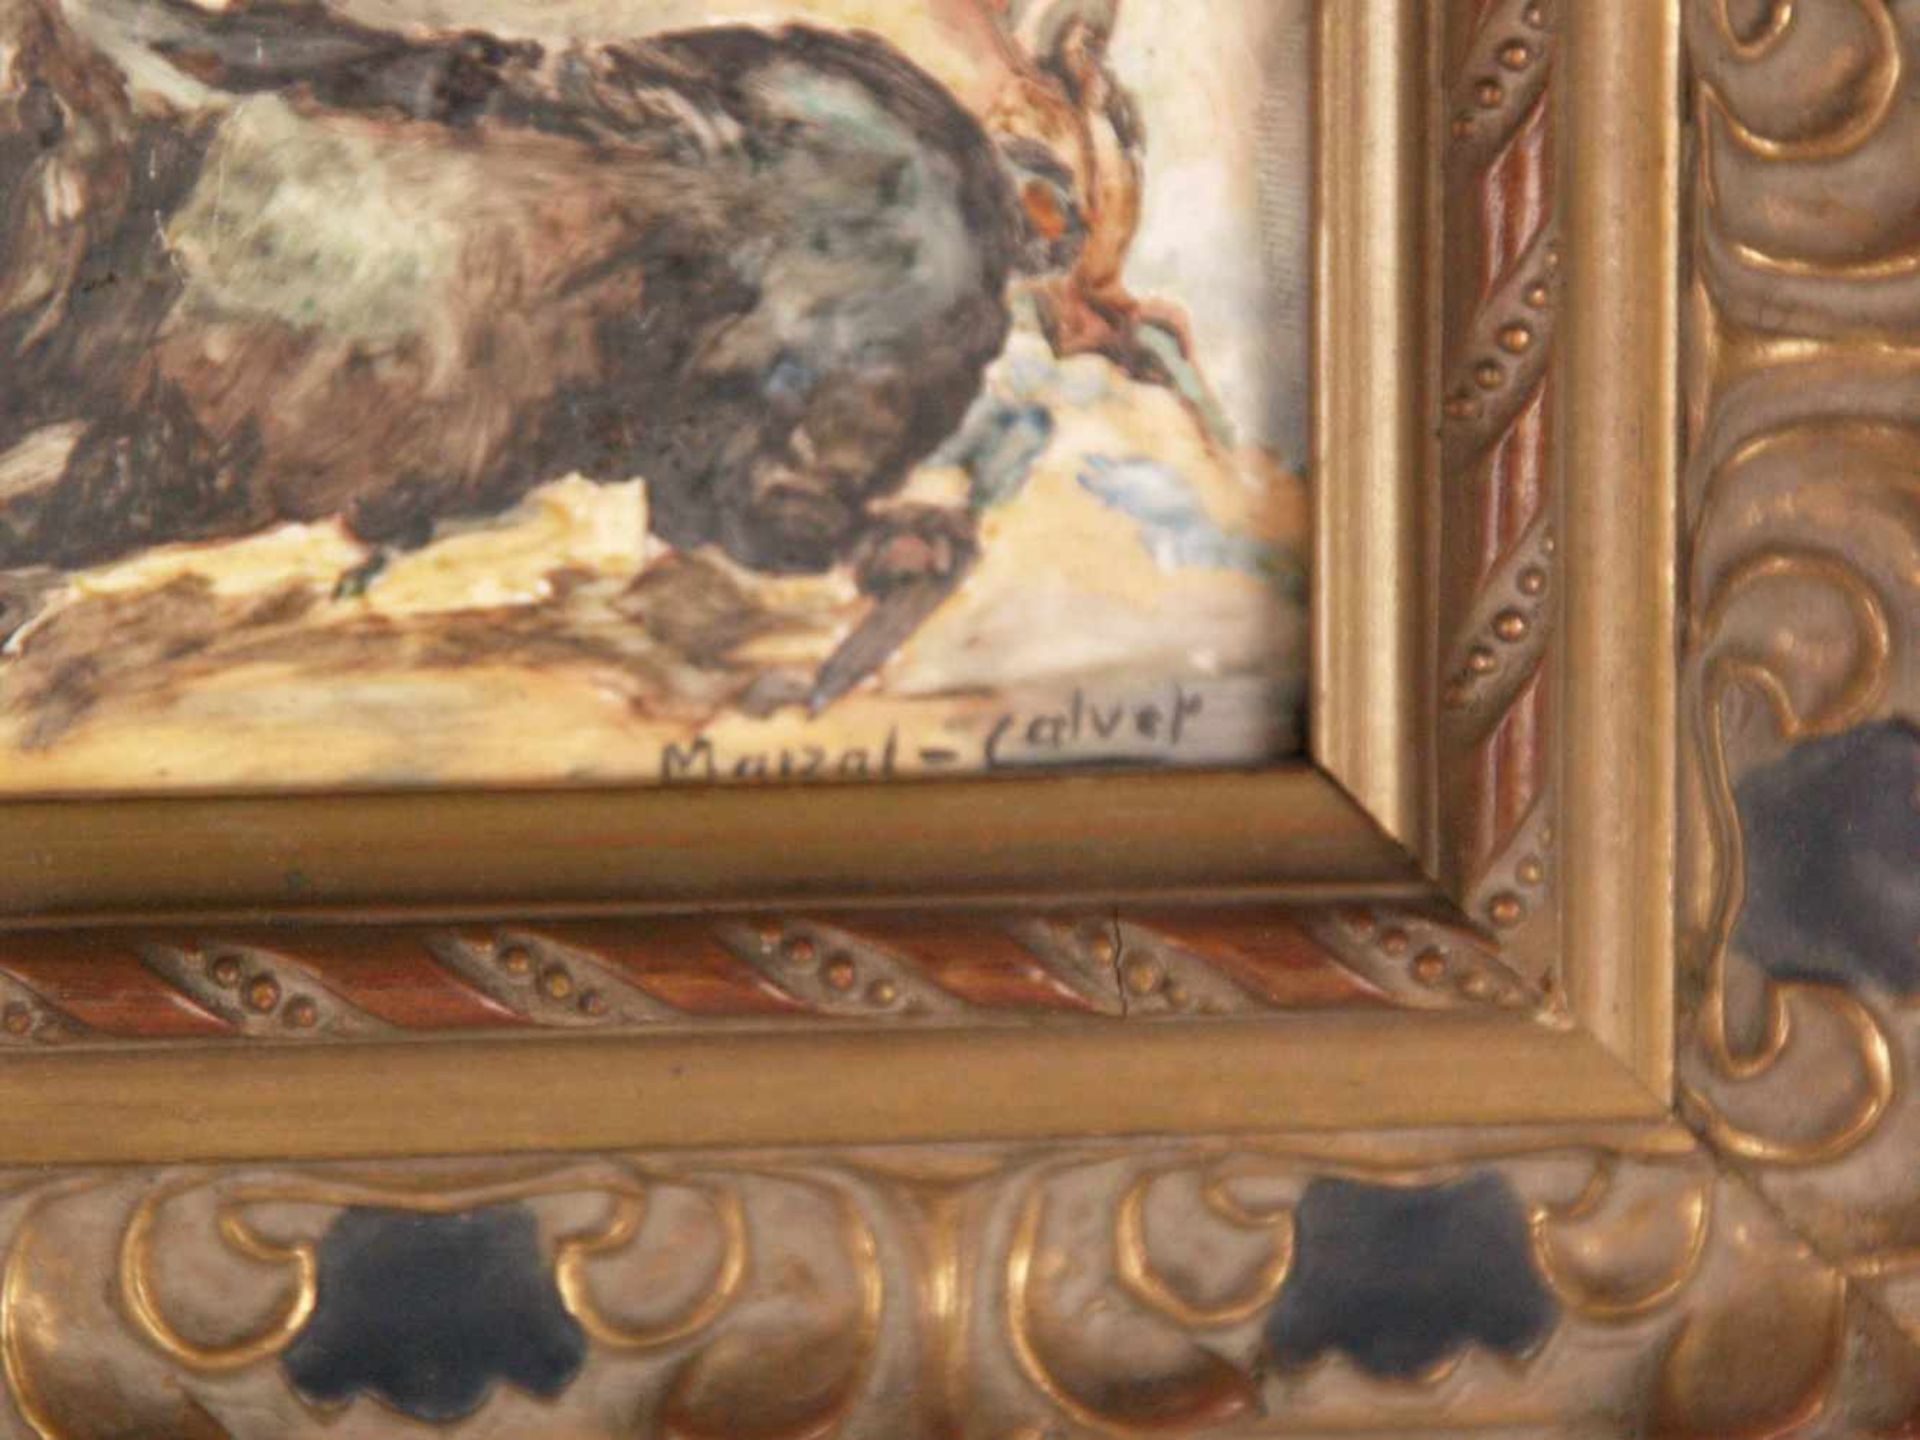 Keramikbild - Marzal-Calver/Spanien 20.Jh.,"Tauromachie", Malerei im impressionistischen Stil auf - Bild 3 aus 4